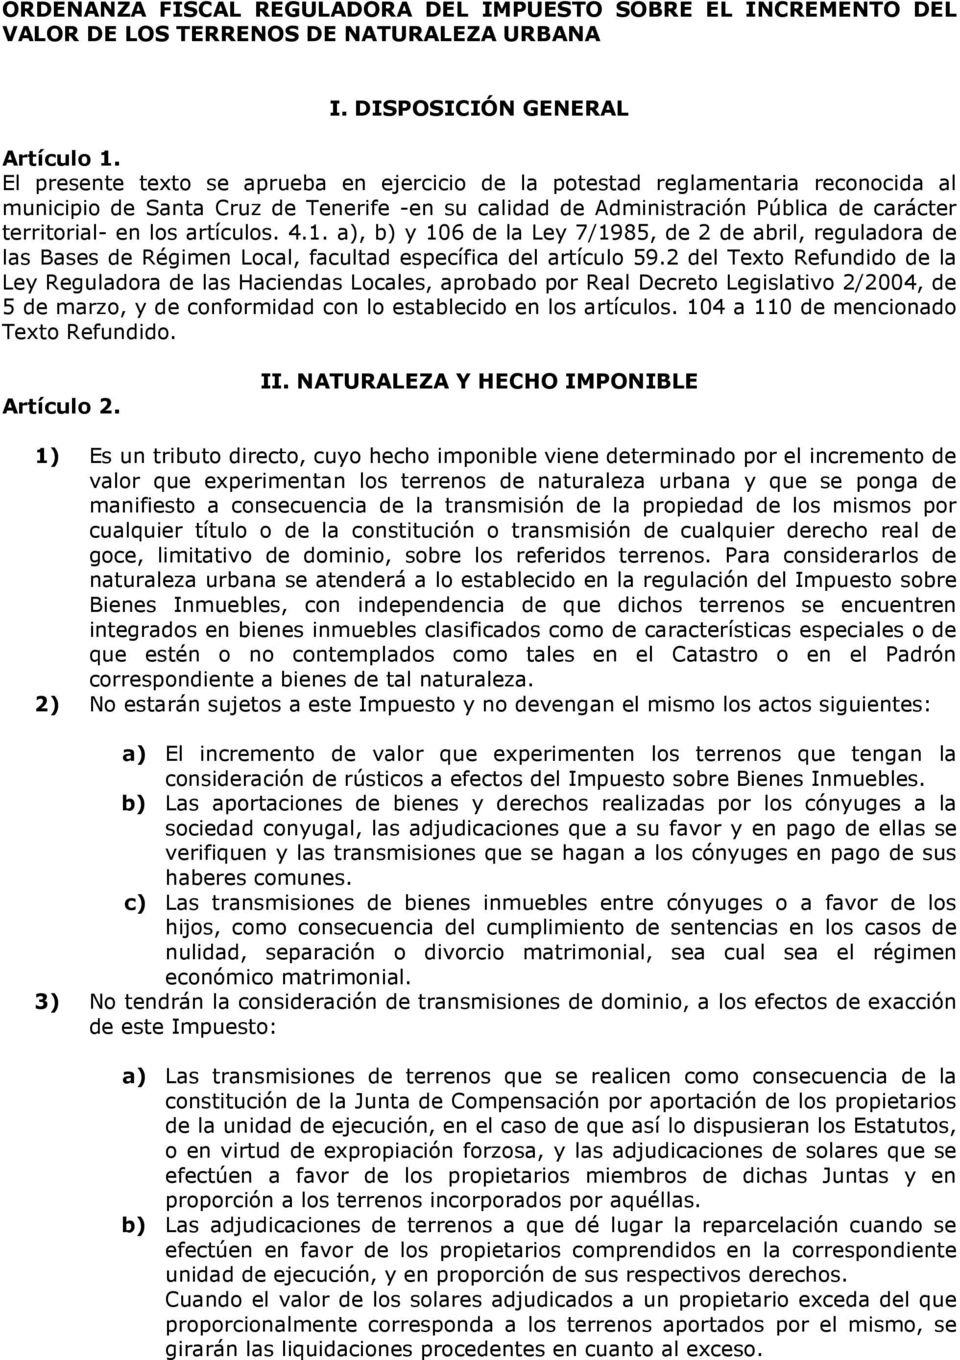 artículos. 4.1. a), b) y 106 de la Ley 7/1985, de 2 de abril, reguladora de las Bases de Régimen Local, facultad específica del artículo 59.